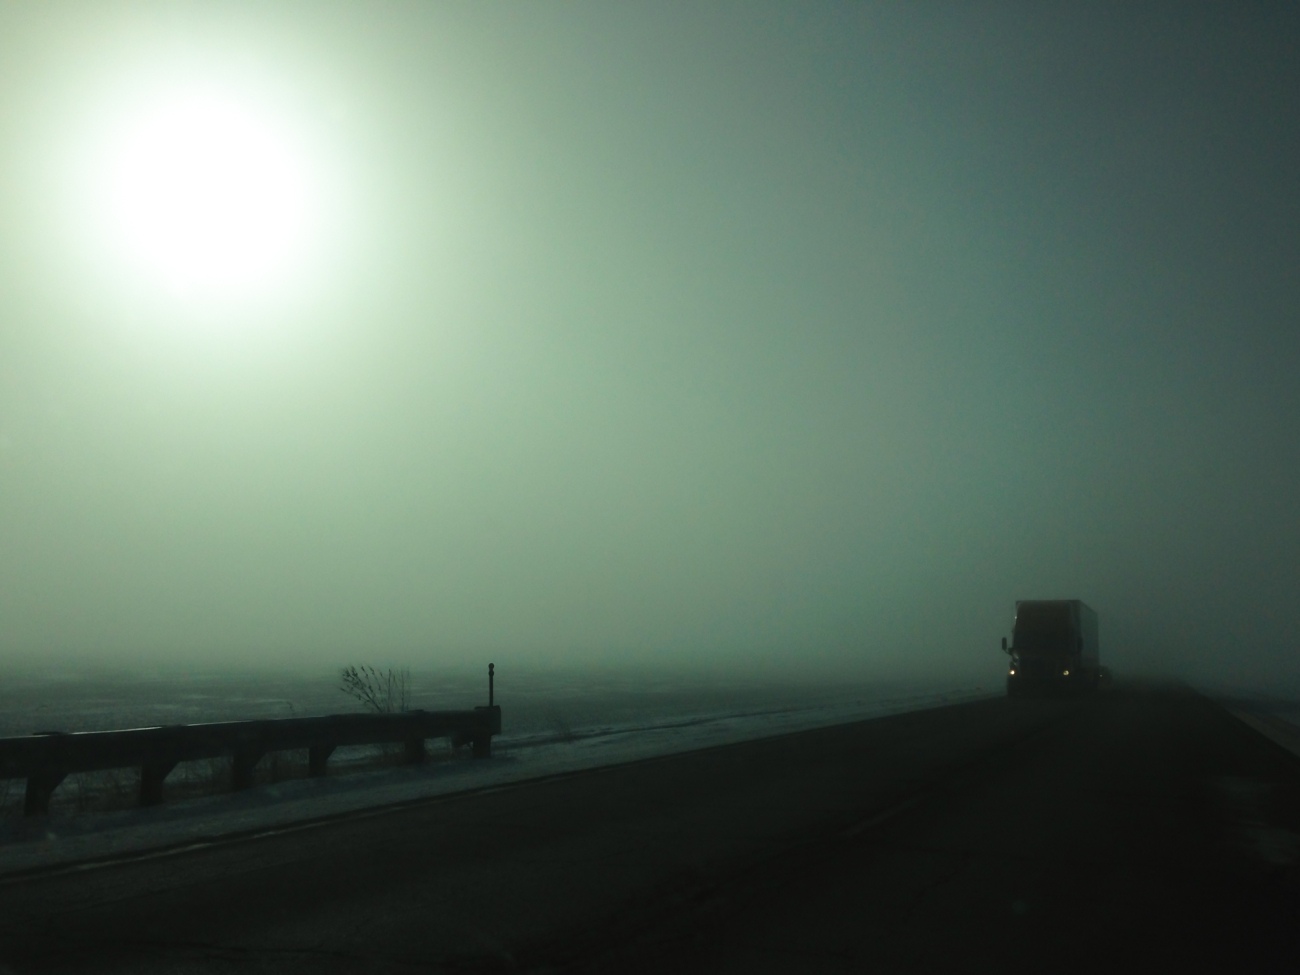 Dense morning fog